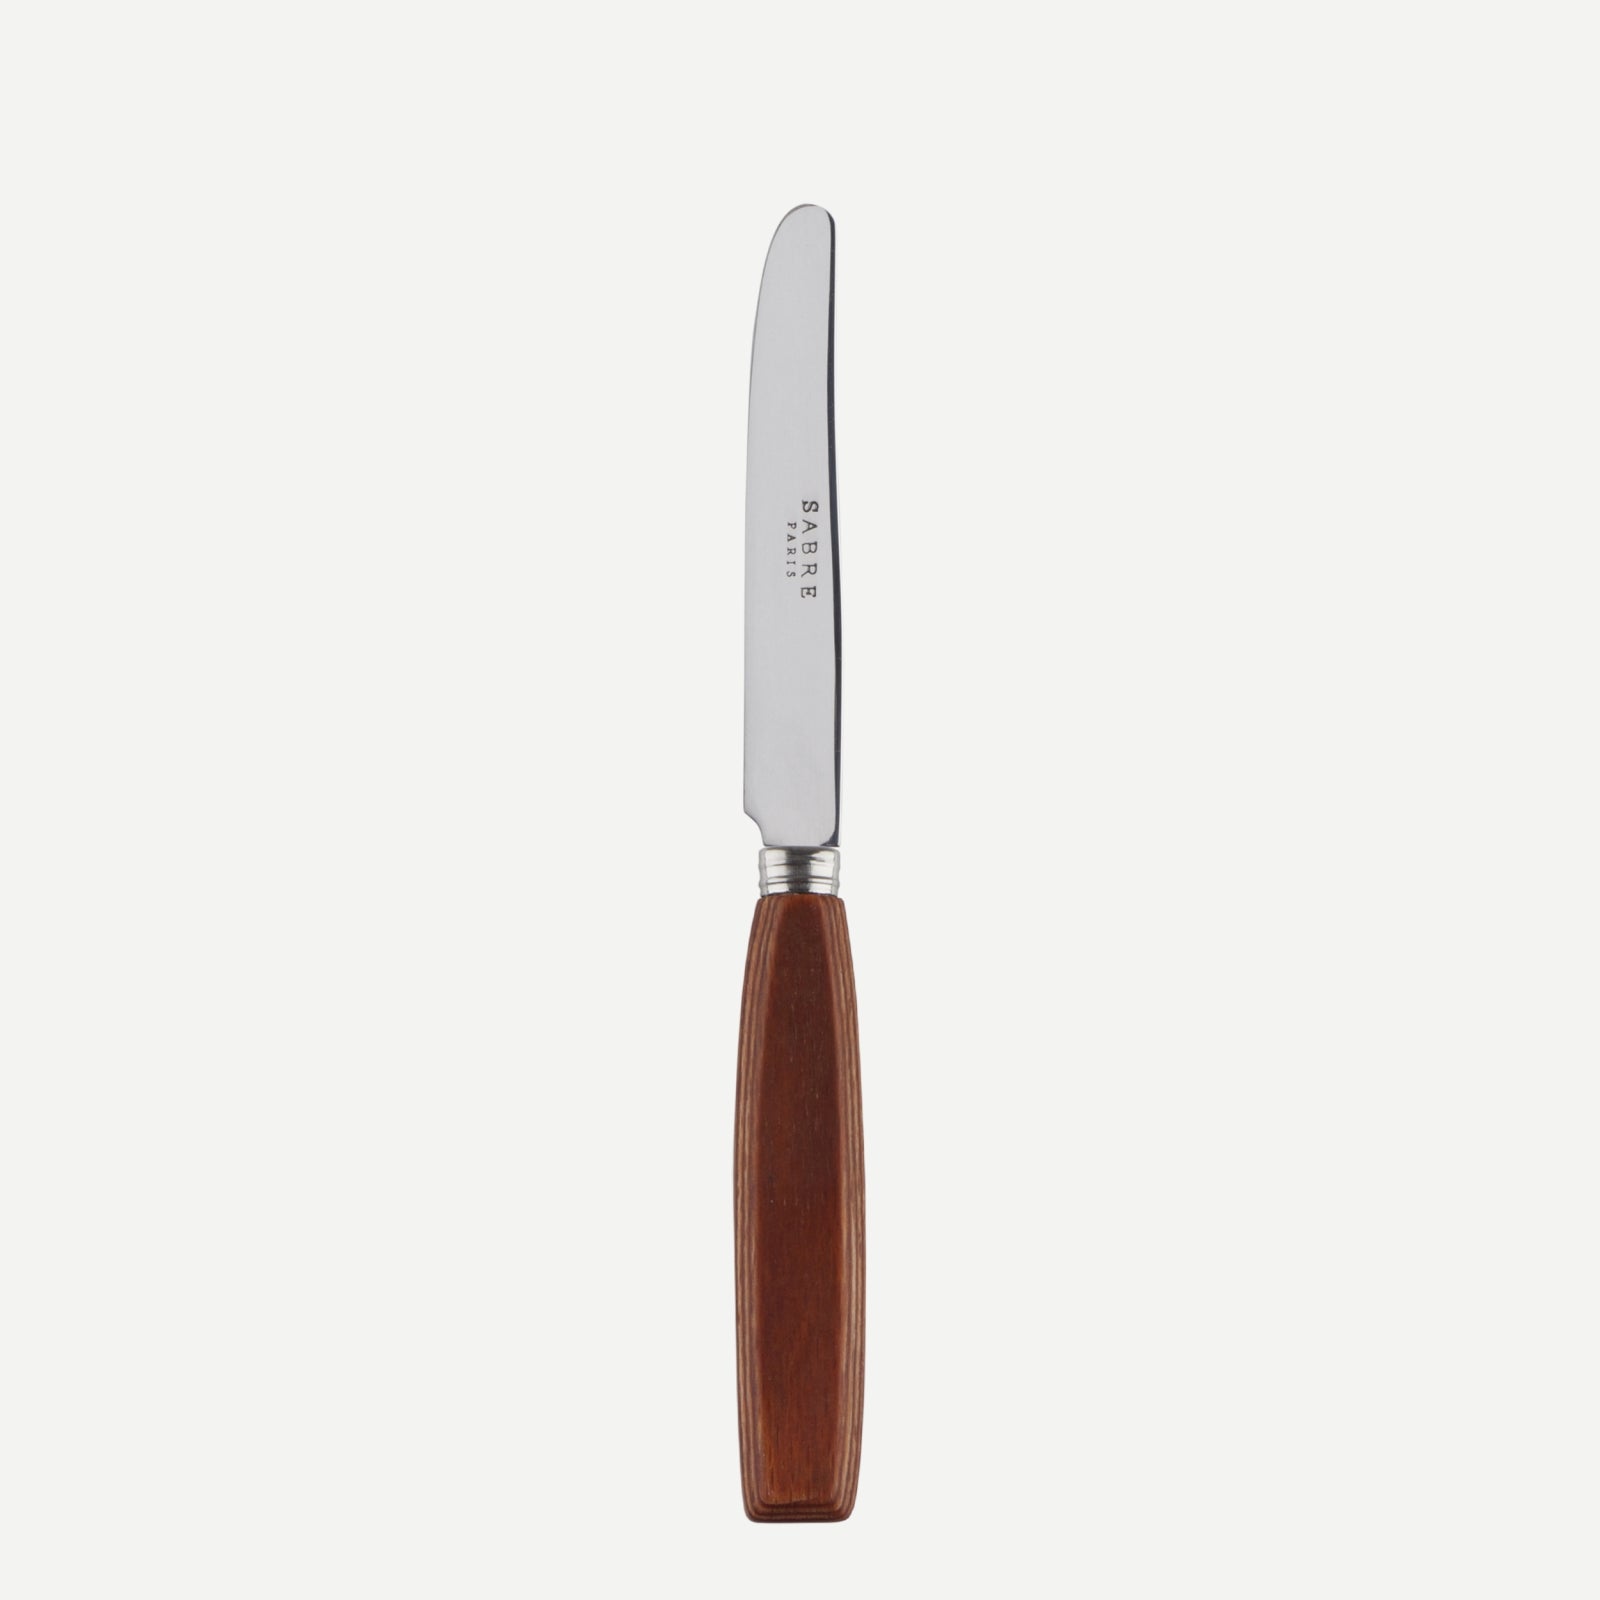 Breakfast knife - Djembe - Light press wood